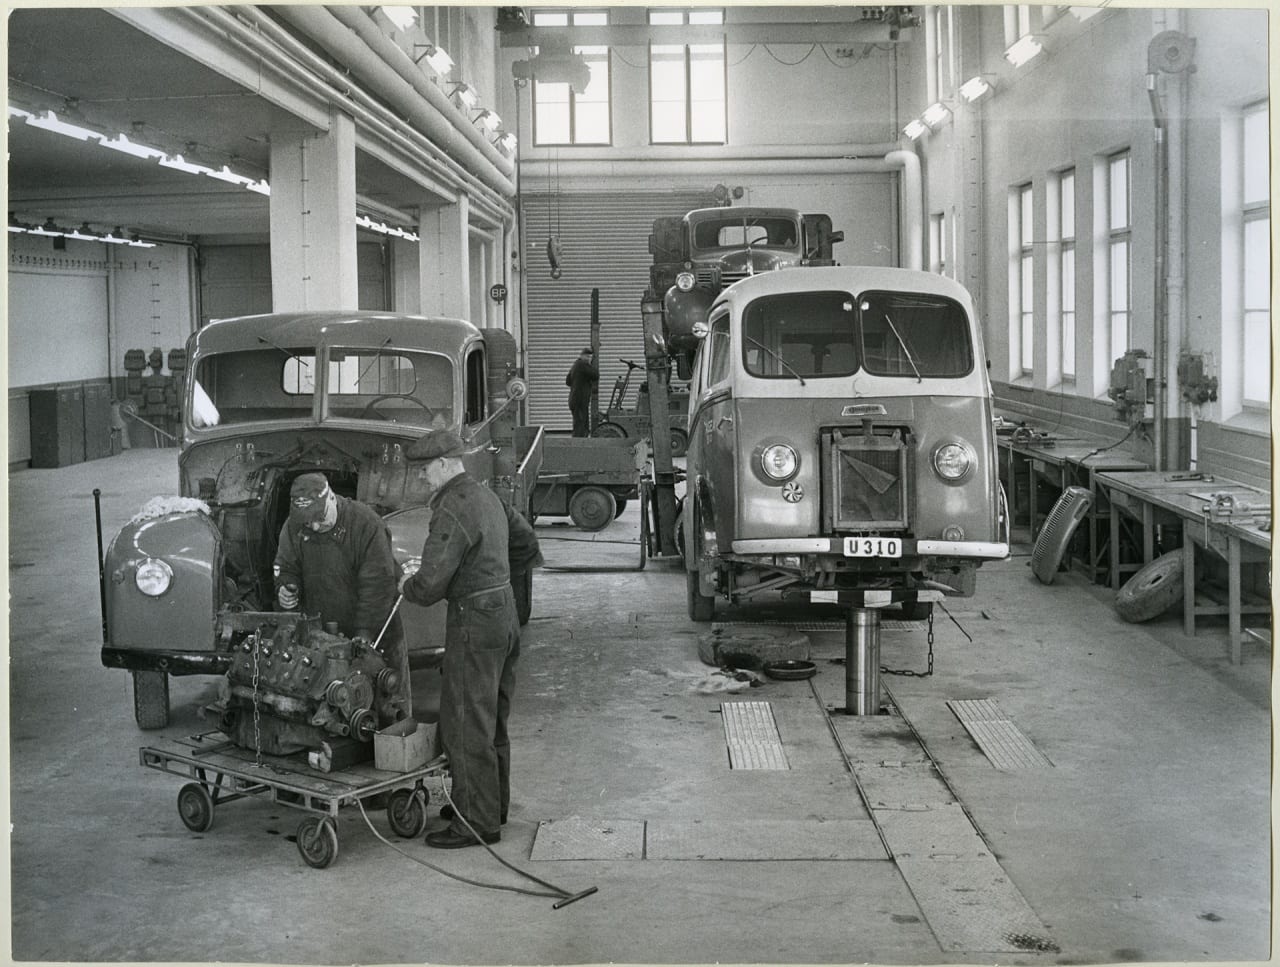 Aseas bilverkstad i Viksängshuset med hydraliska billyftar år 1956. Tre bilar står inne i verkstaden och tre verkstadsarbetare arbetar med dem.